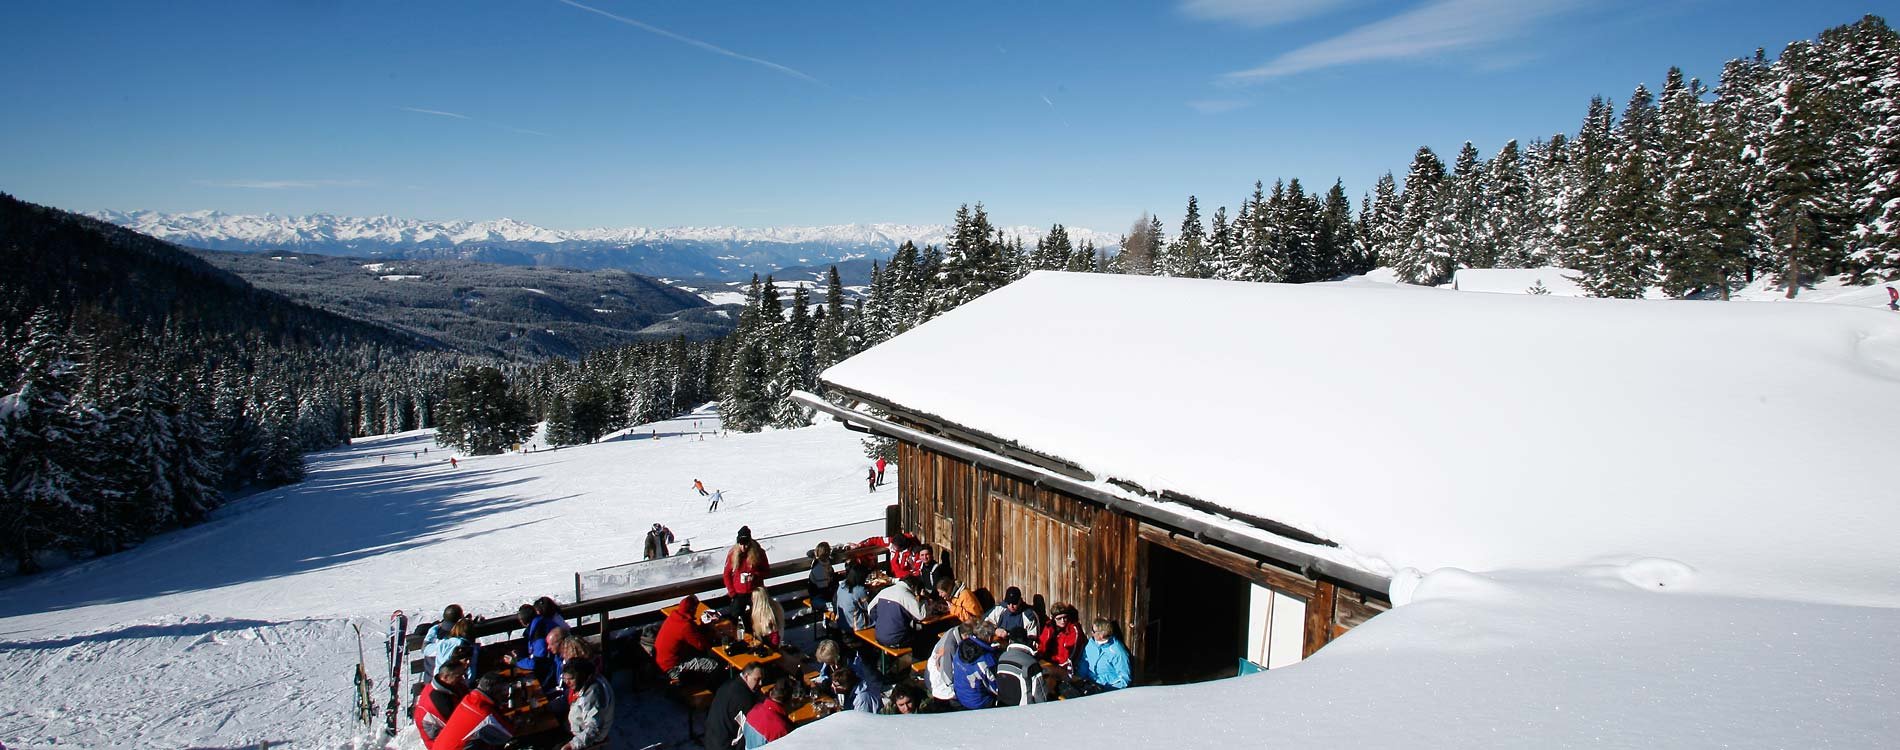 Alpine hut jamboree & après ski 